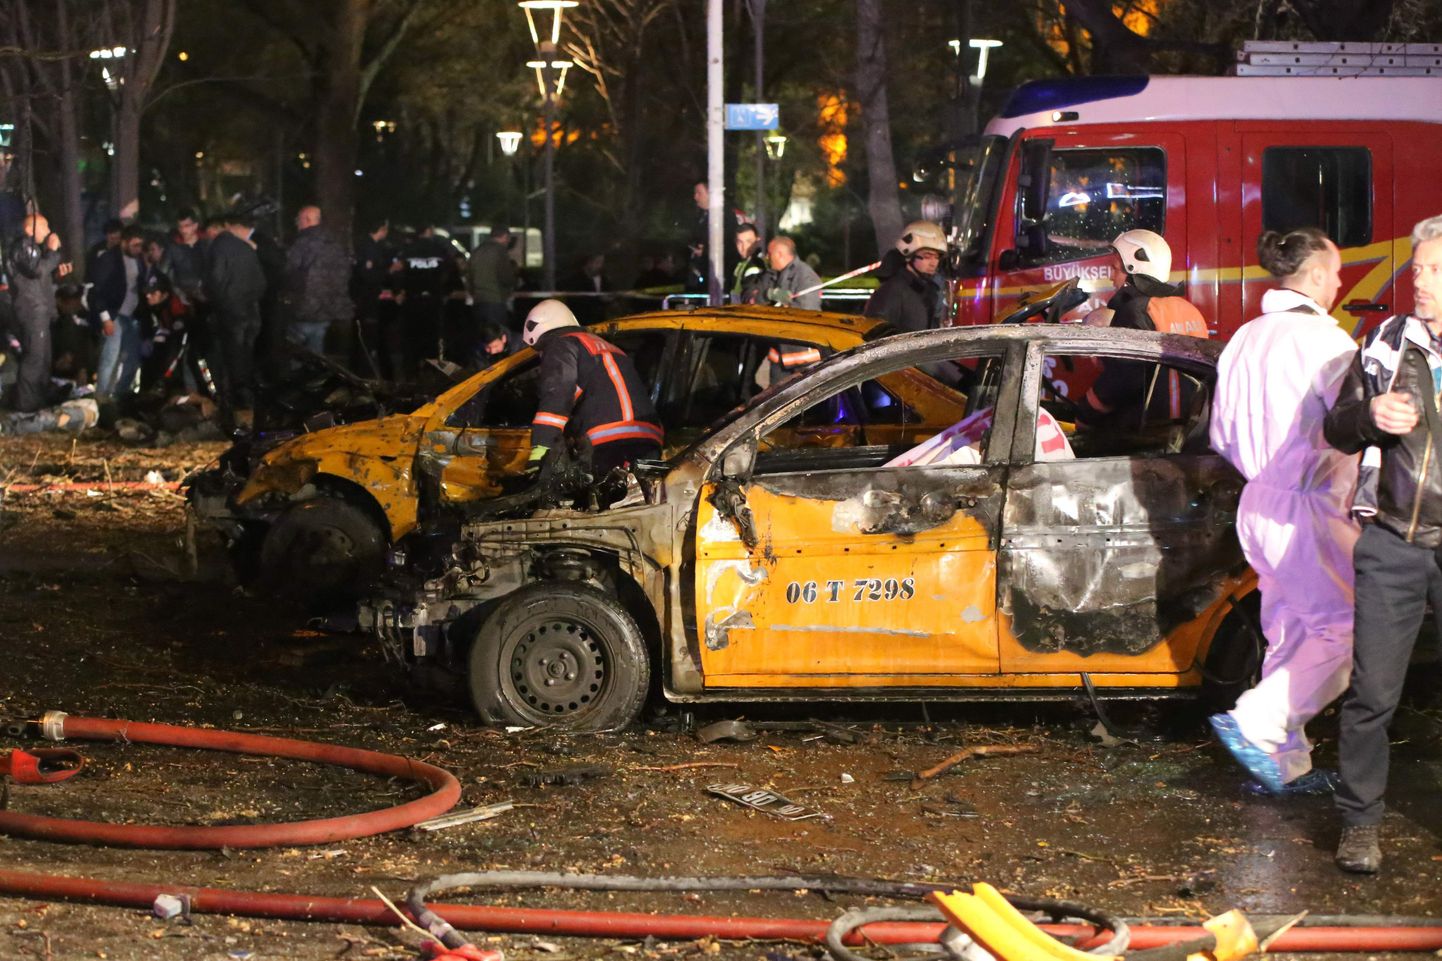 Ankaras sai plahvatuses mitu inimest surma ja paljud vigastada